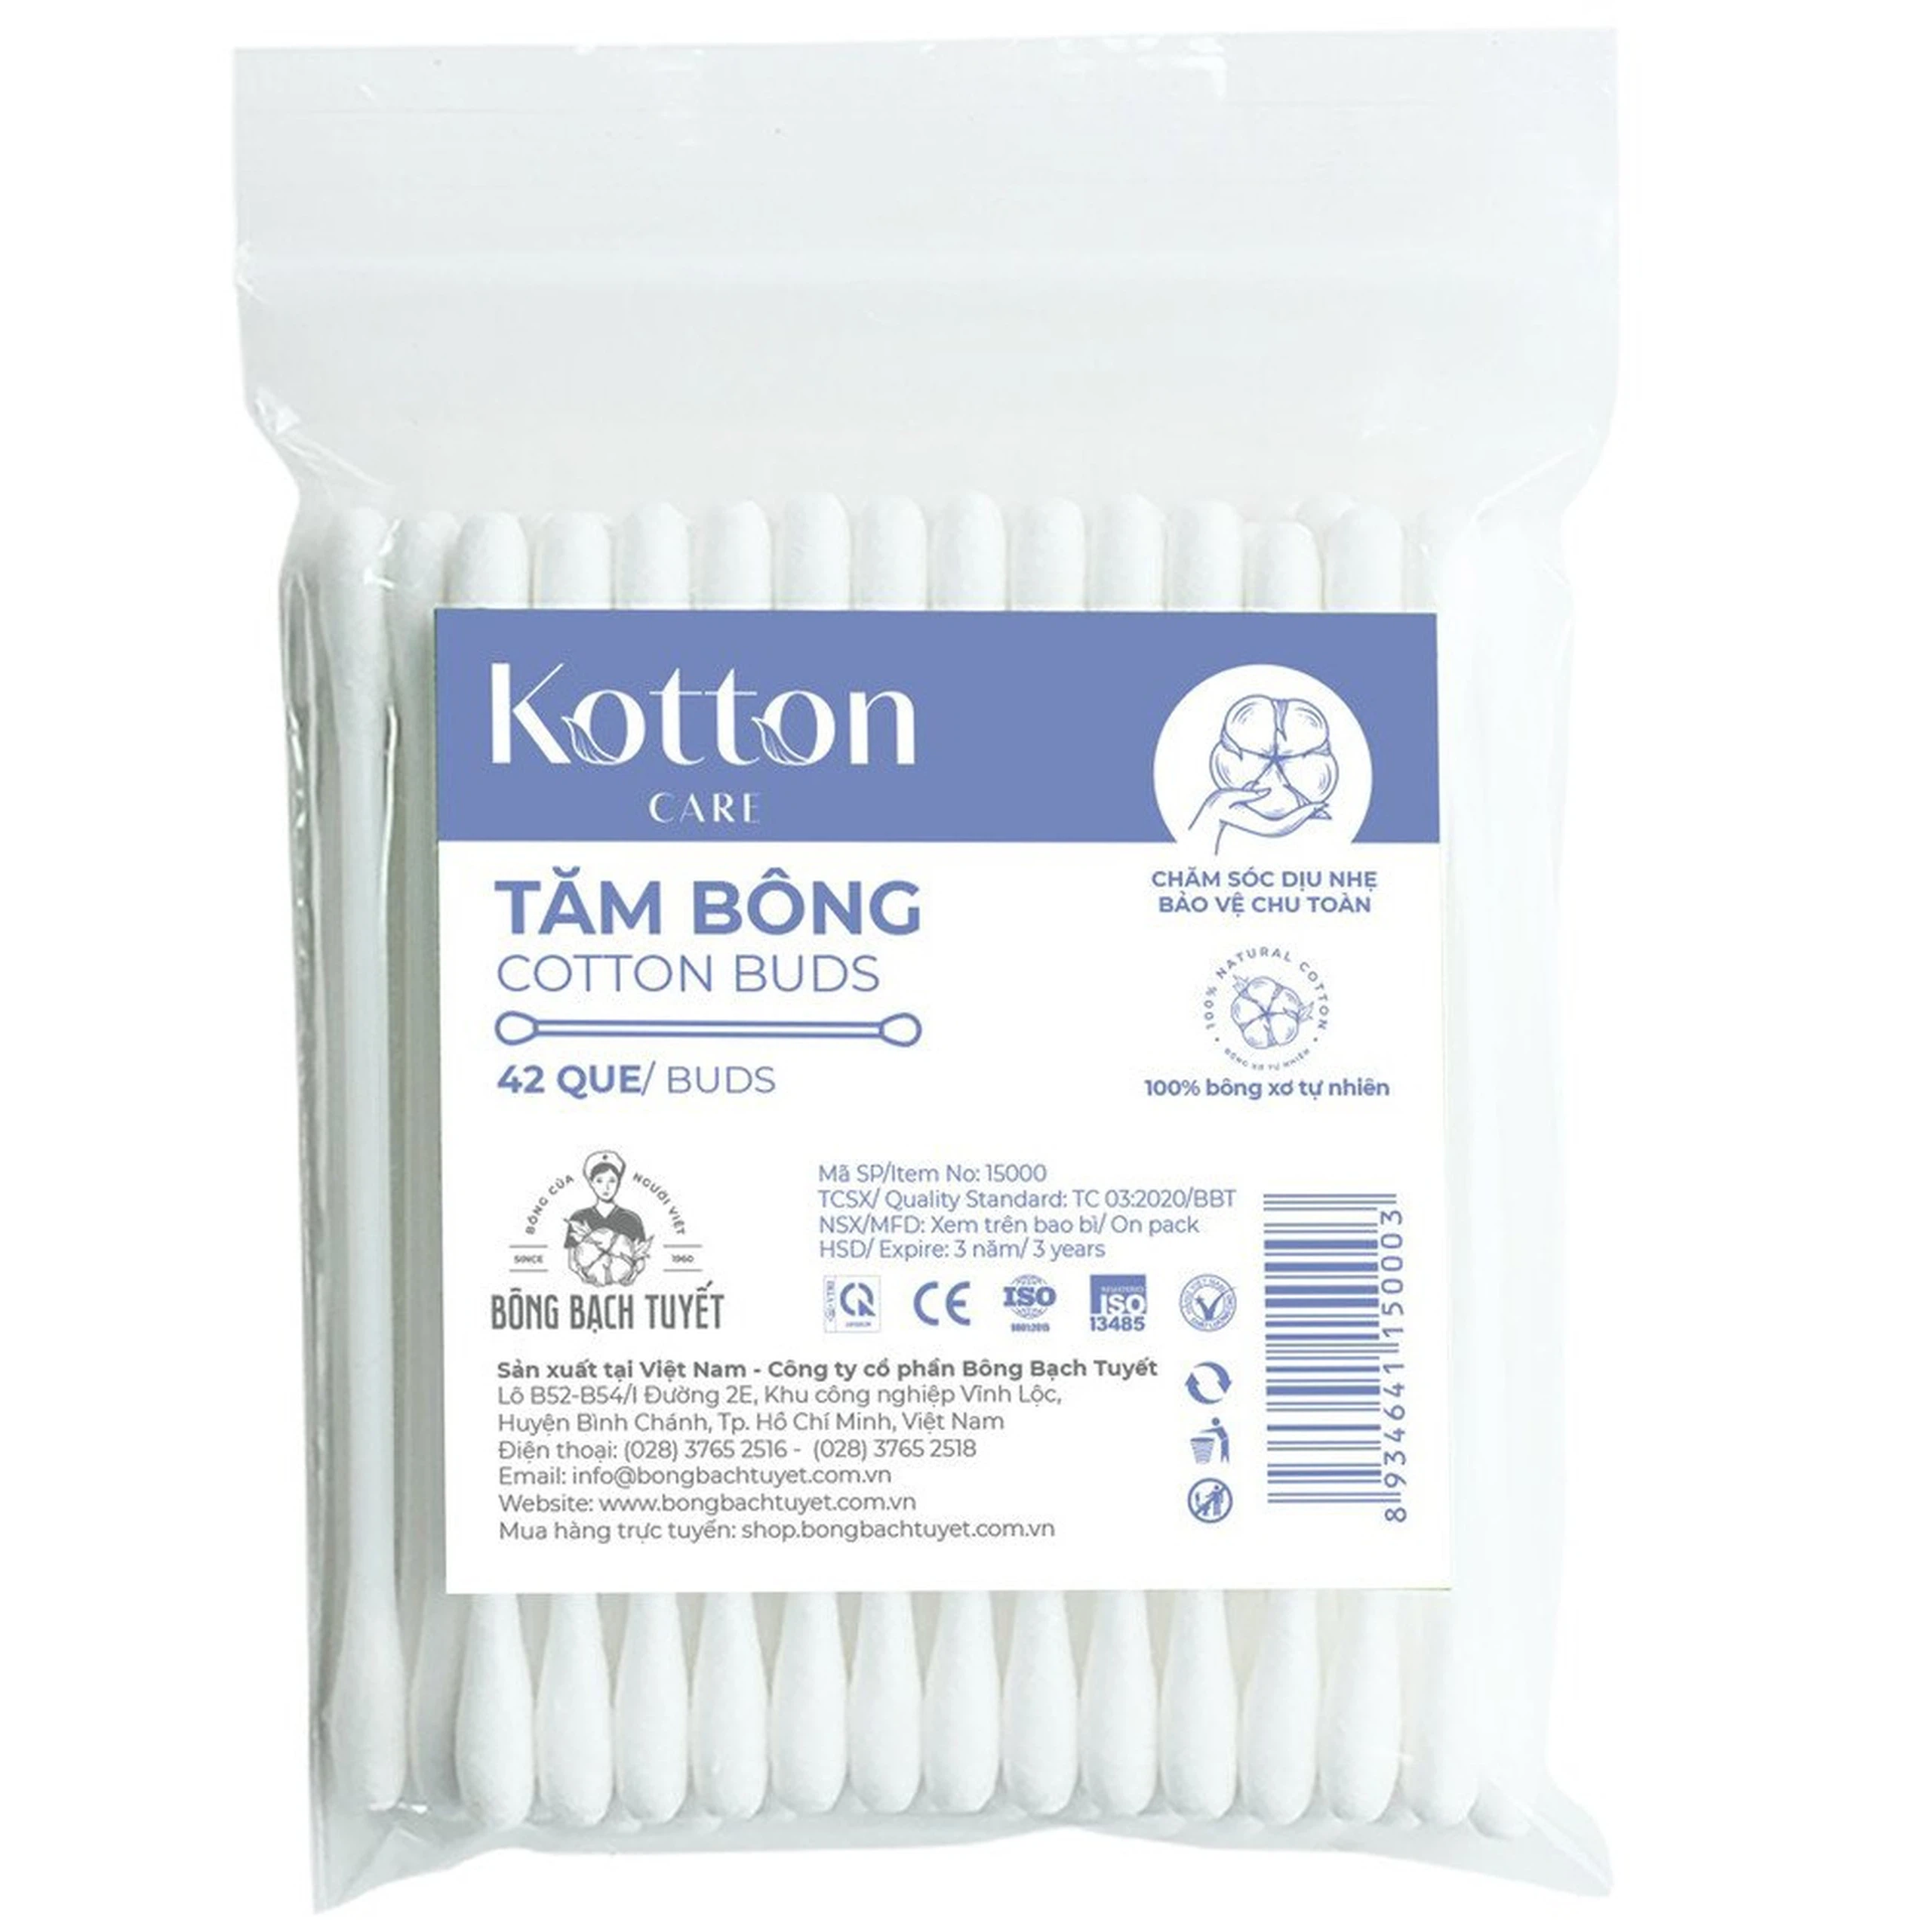 Tăm bông Kotton Care Cotton Buds Bạch Tuyết tiện dụng cho trang điểm, tẩy trang (42 que)